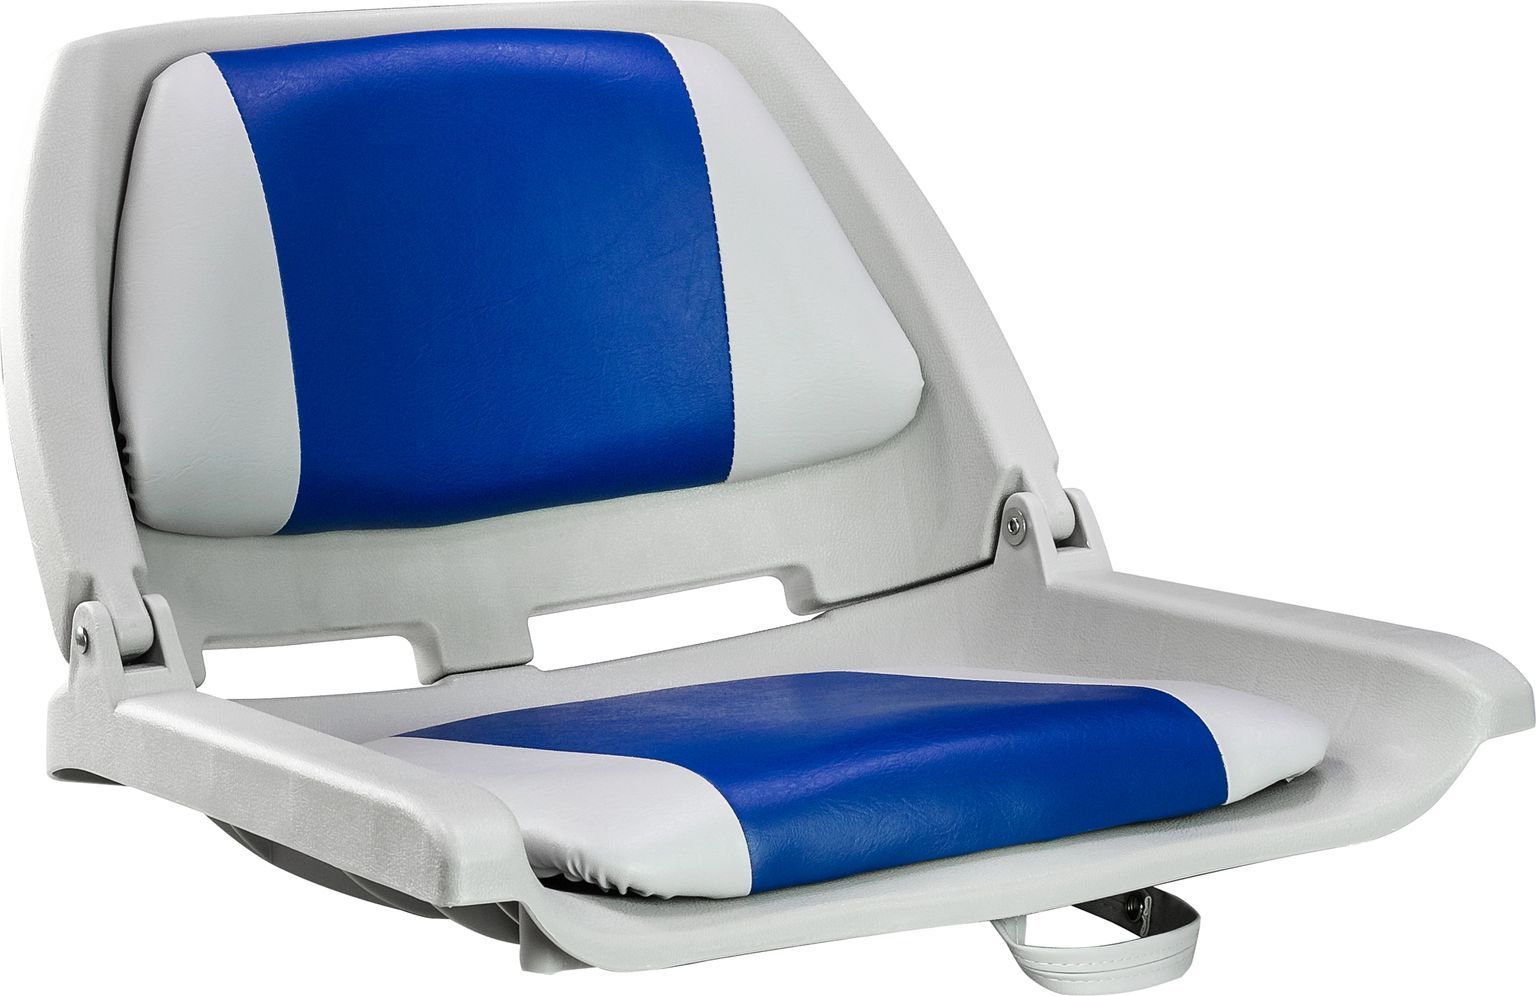 Кресло пластмассовое складное с подложкой Molded Fold-Down Boat Seat,серый/голубой 75109GB кресло пластмассовое складное с подложкой molded fold down boat seat серый чёрный 75109gc